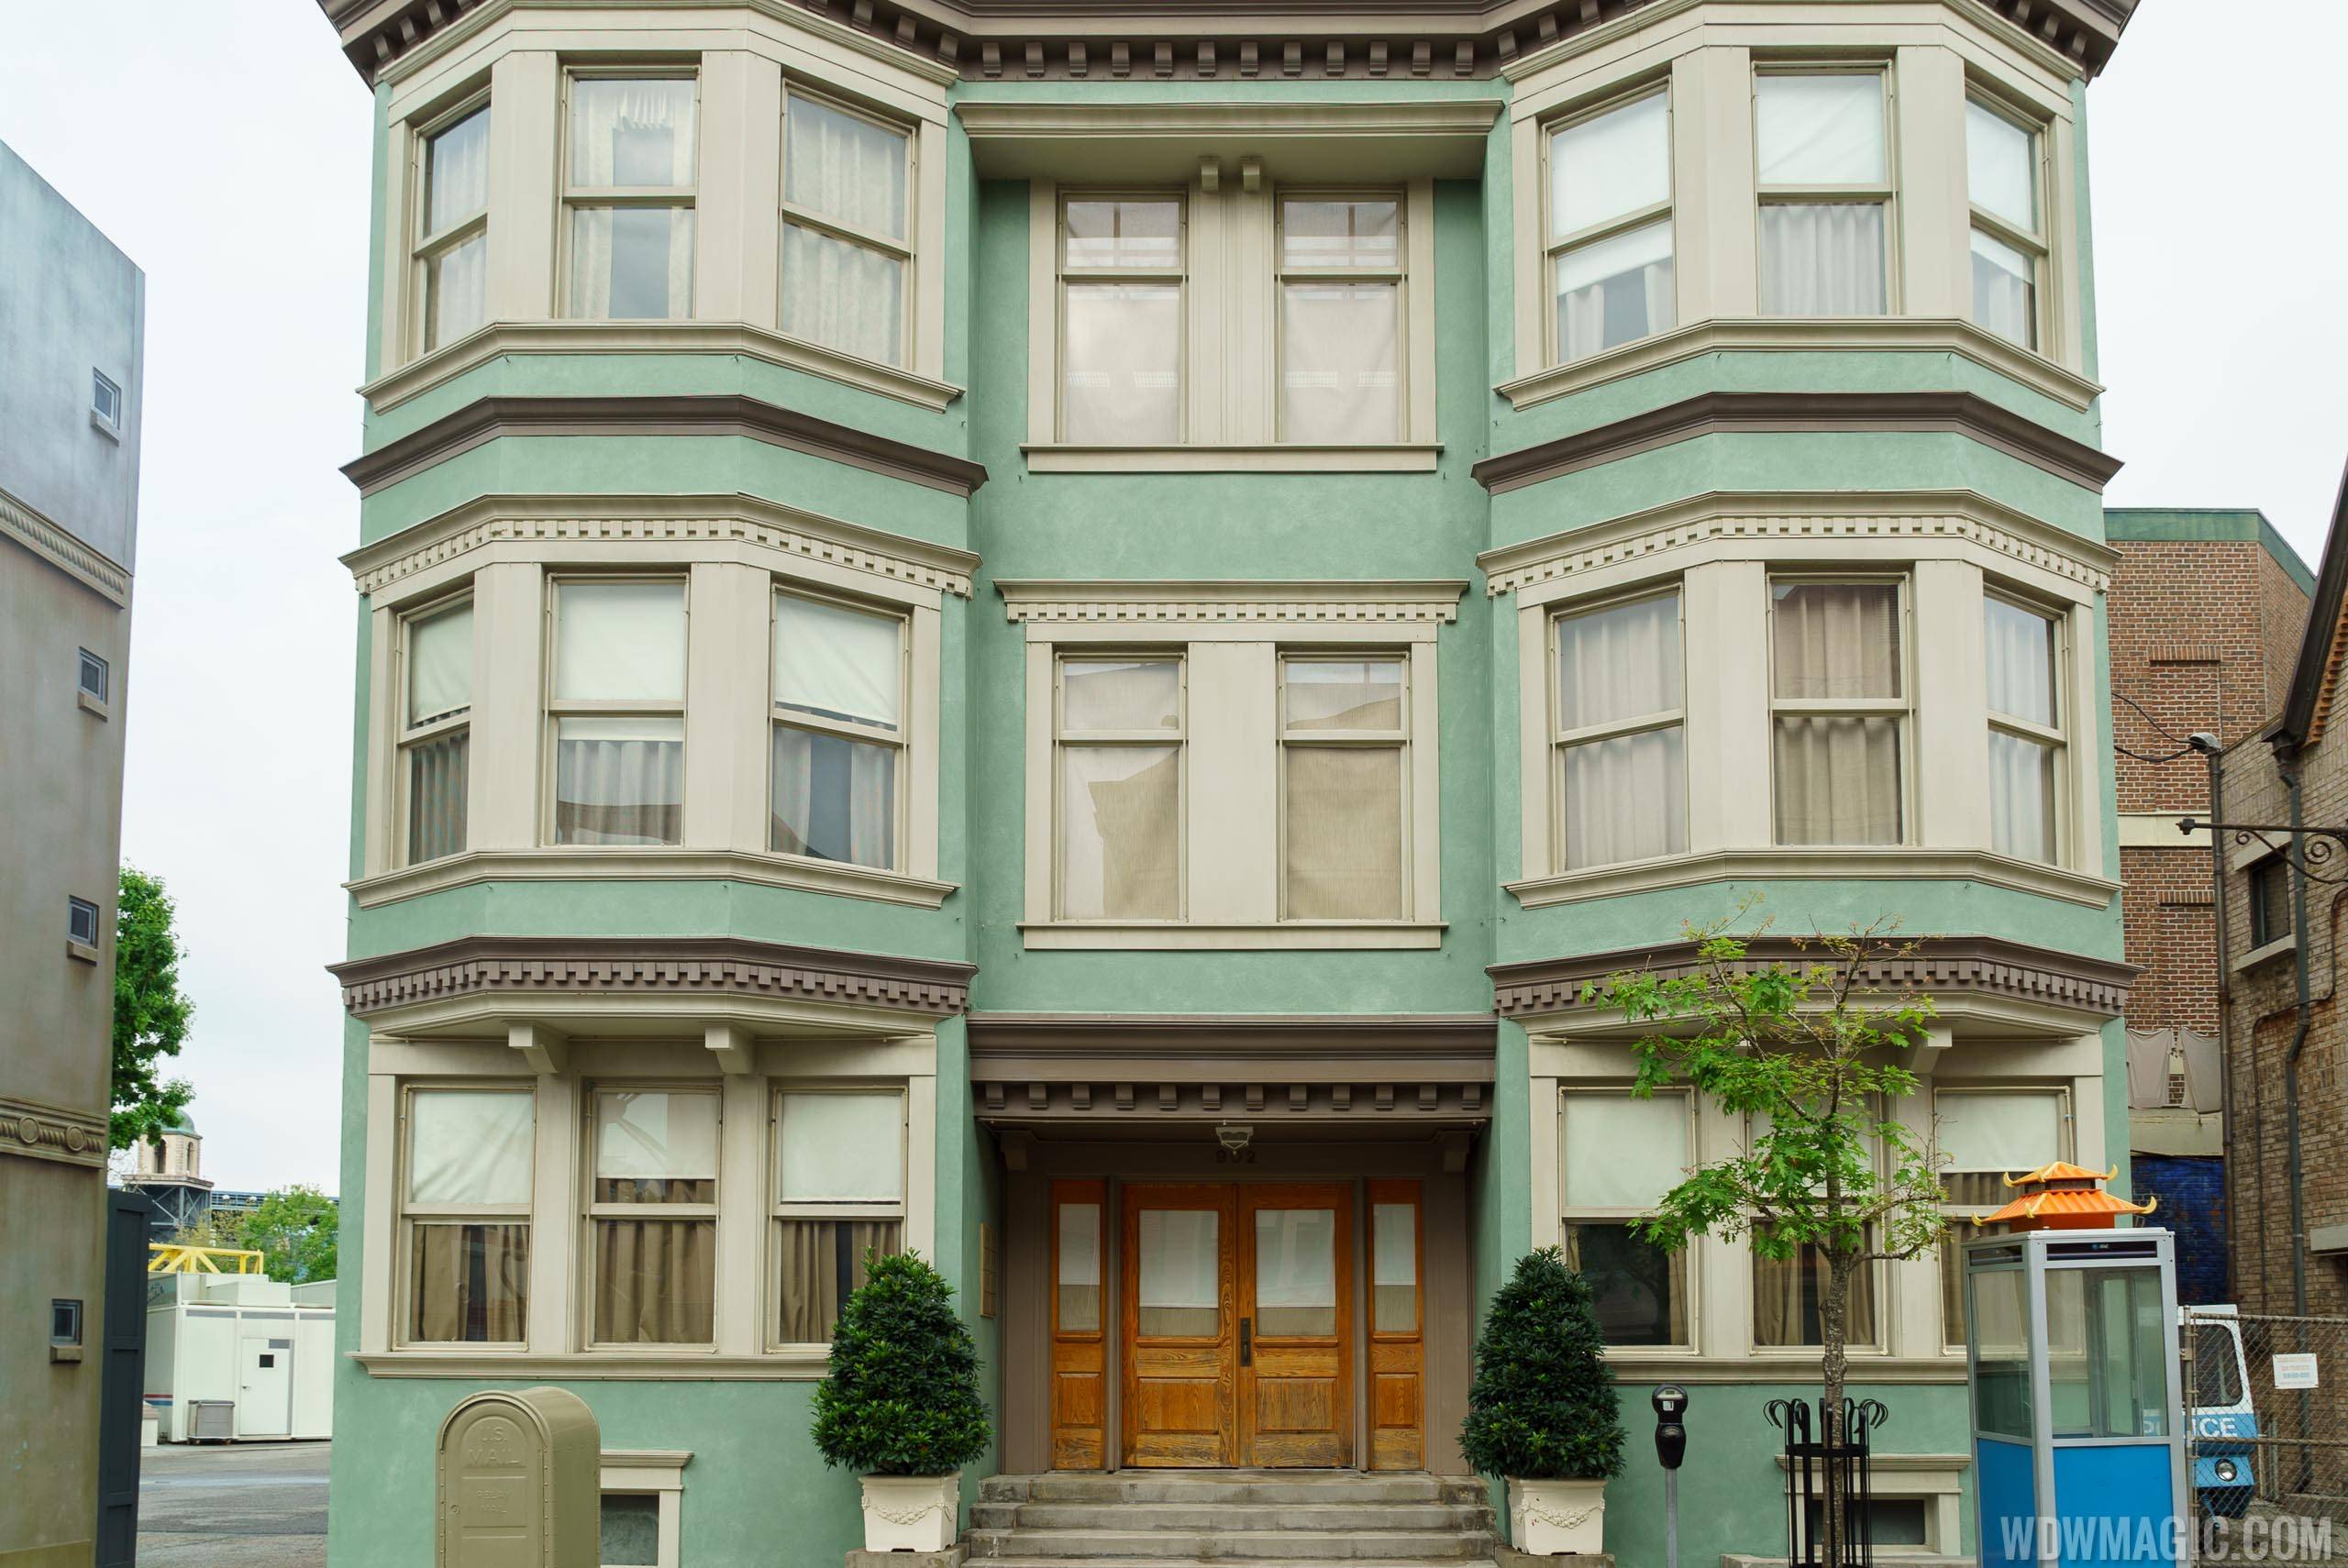 Streets of America facades - San Fransisco